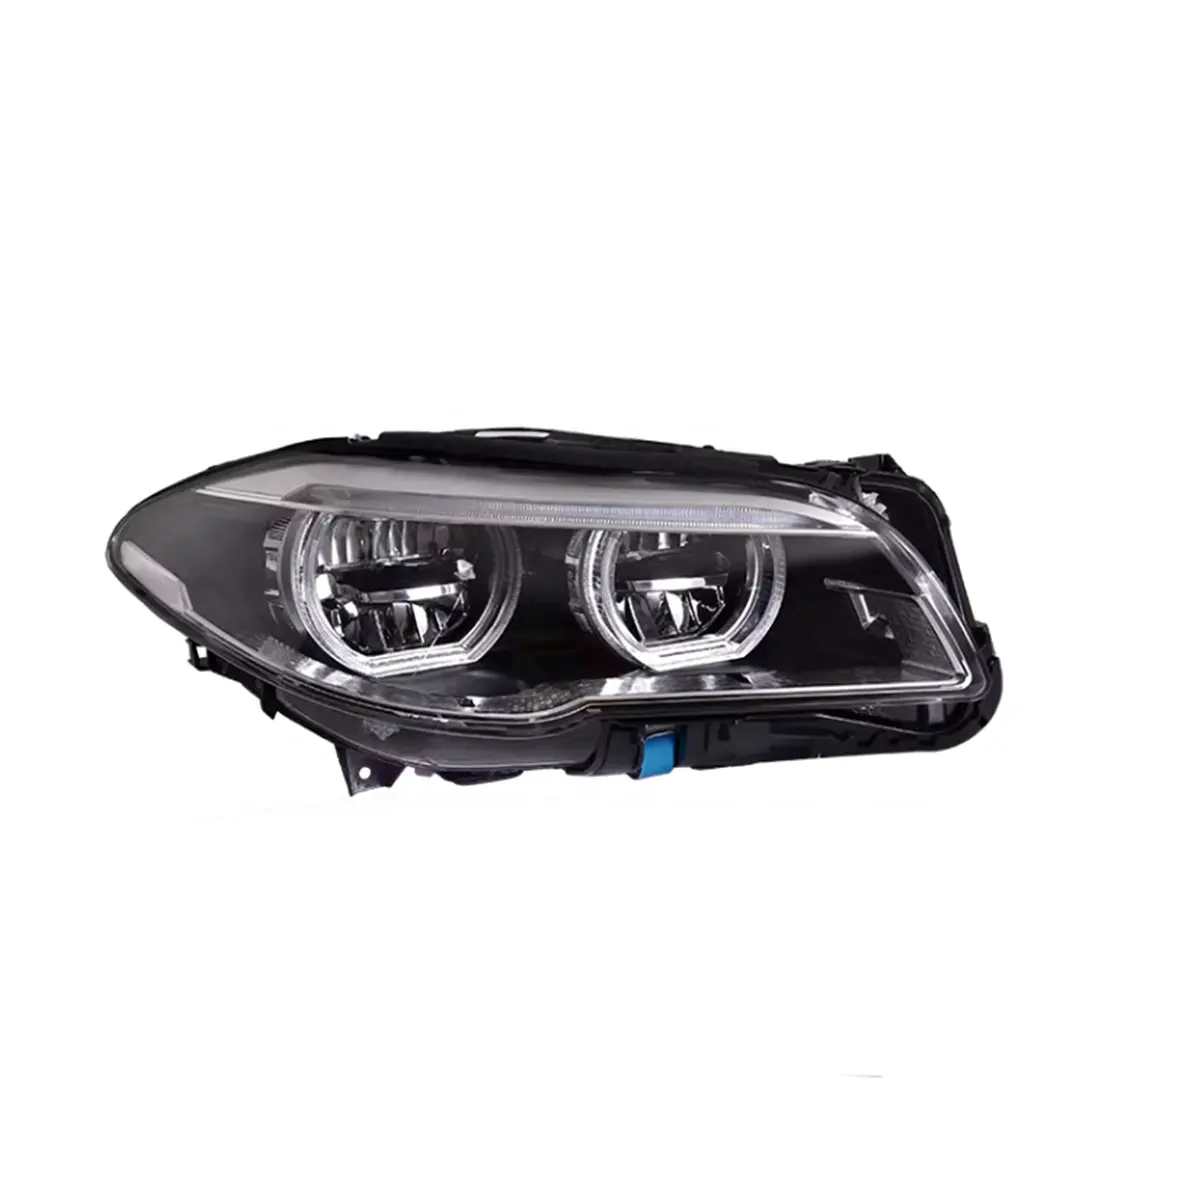 Auto lampen für BMW 5er F10 Scheinwerfer baugruppe 2011-2017 Jahr F18 modifizierte Angel Eye LED Tagfahrlicht